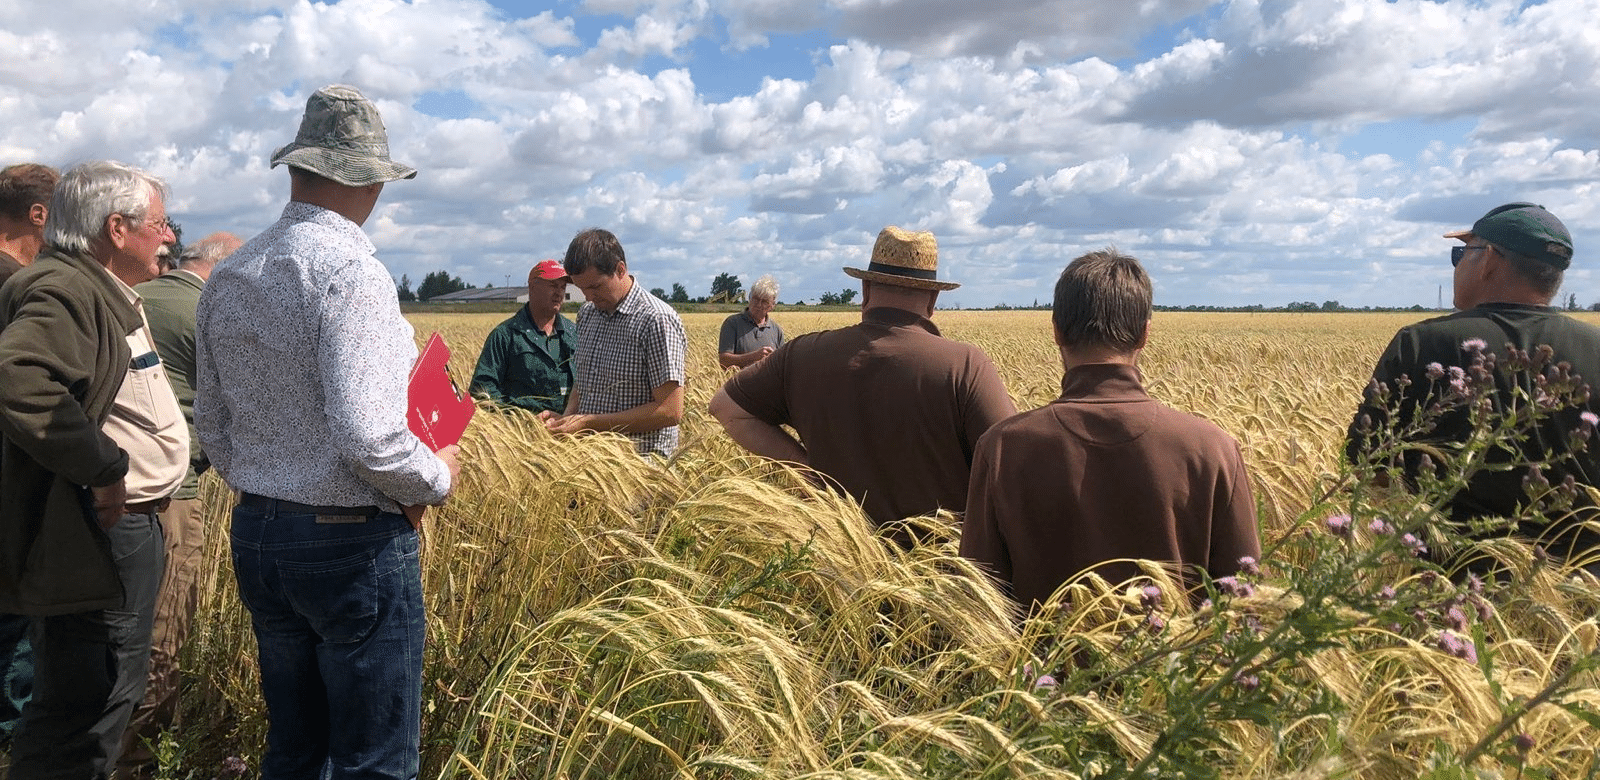 Eine Gruppe von Landwirten beugt sich auf einem Getreidefeld über die reifen Ähren.